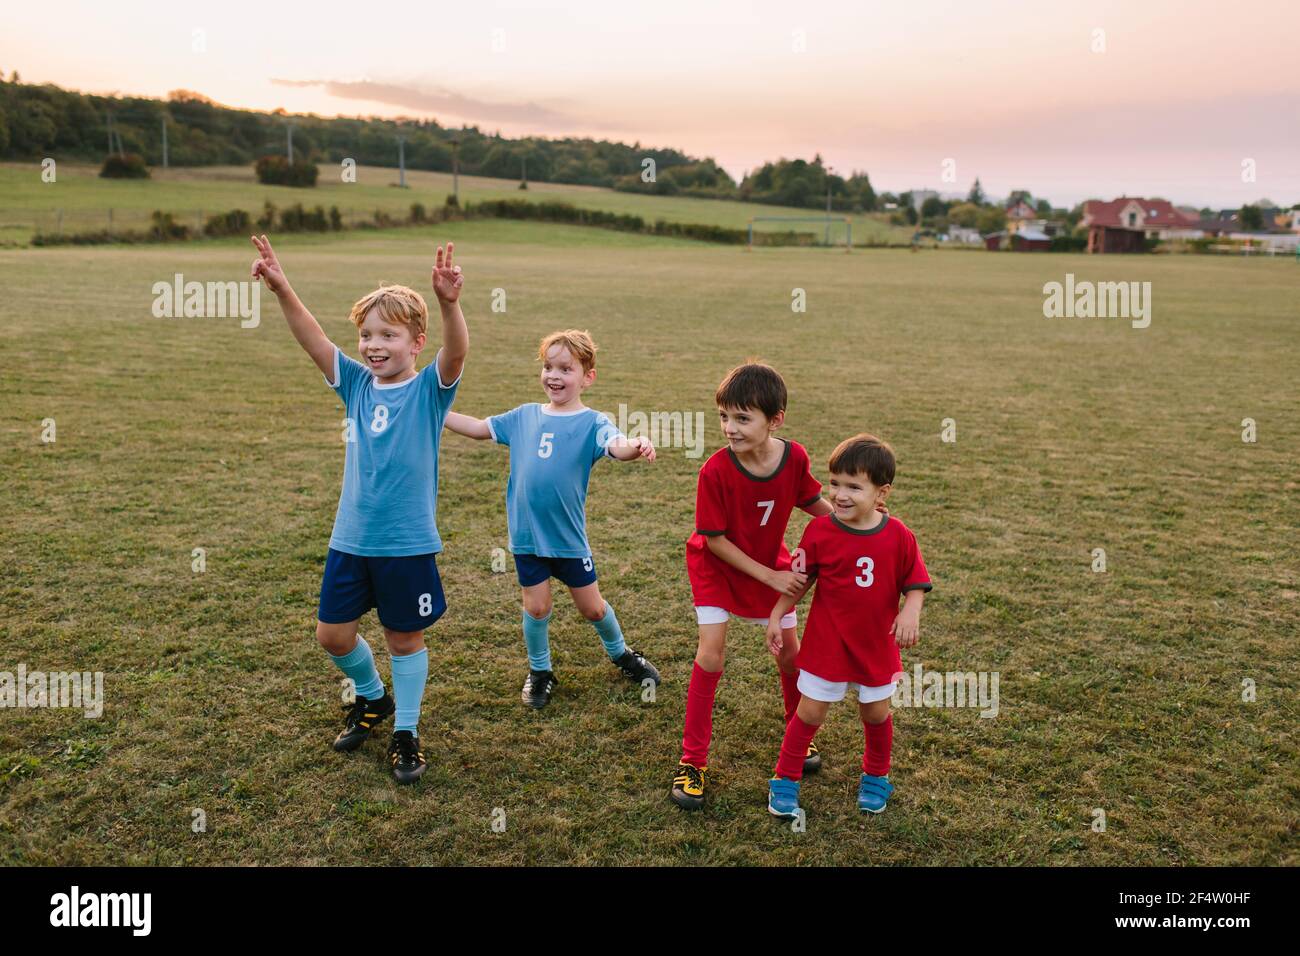 Bambini che giocano a calcio amatoriale. Ragazzi allegri in abiti da calcio che si divertono ad allenarsi in campo. Foto Stock